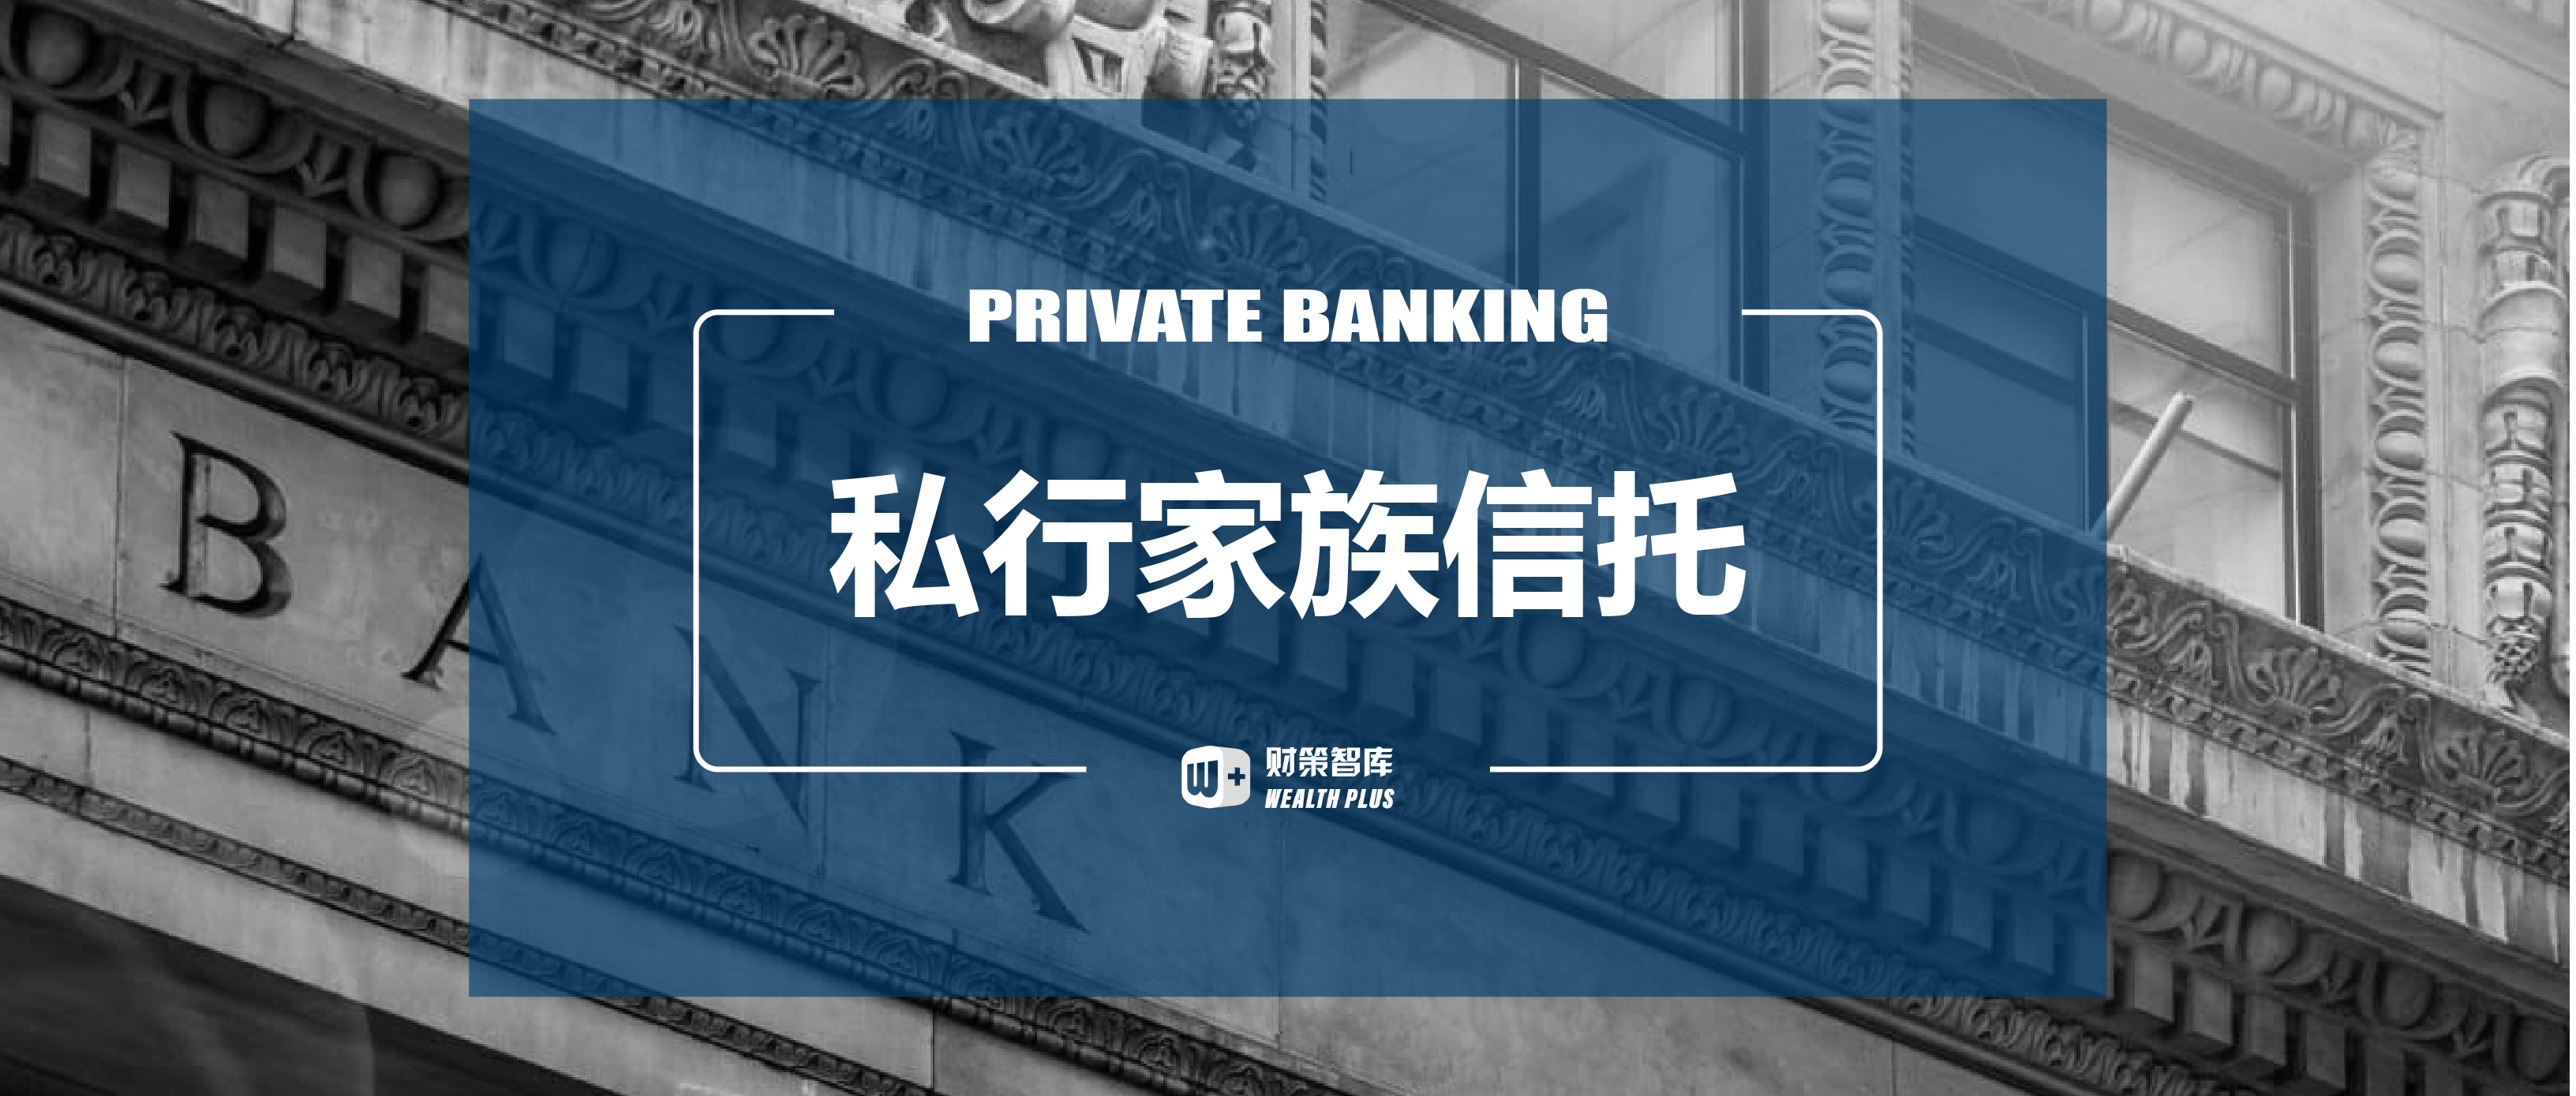 私人银行家族信托业务发展之道